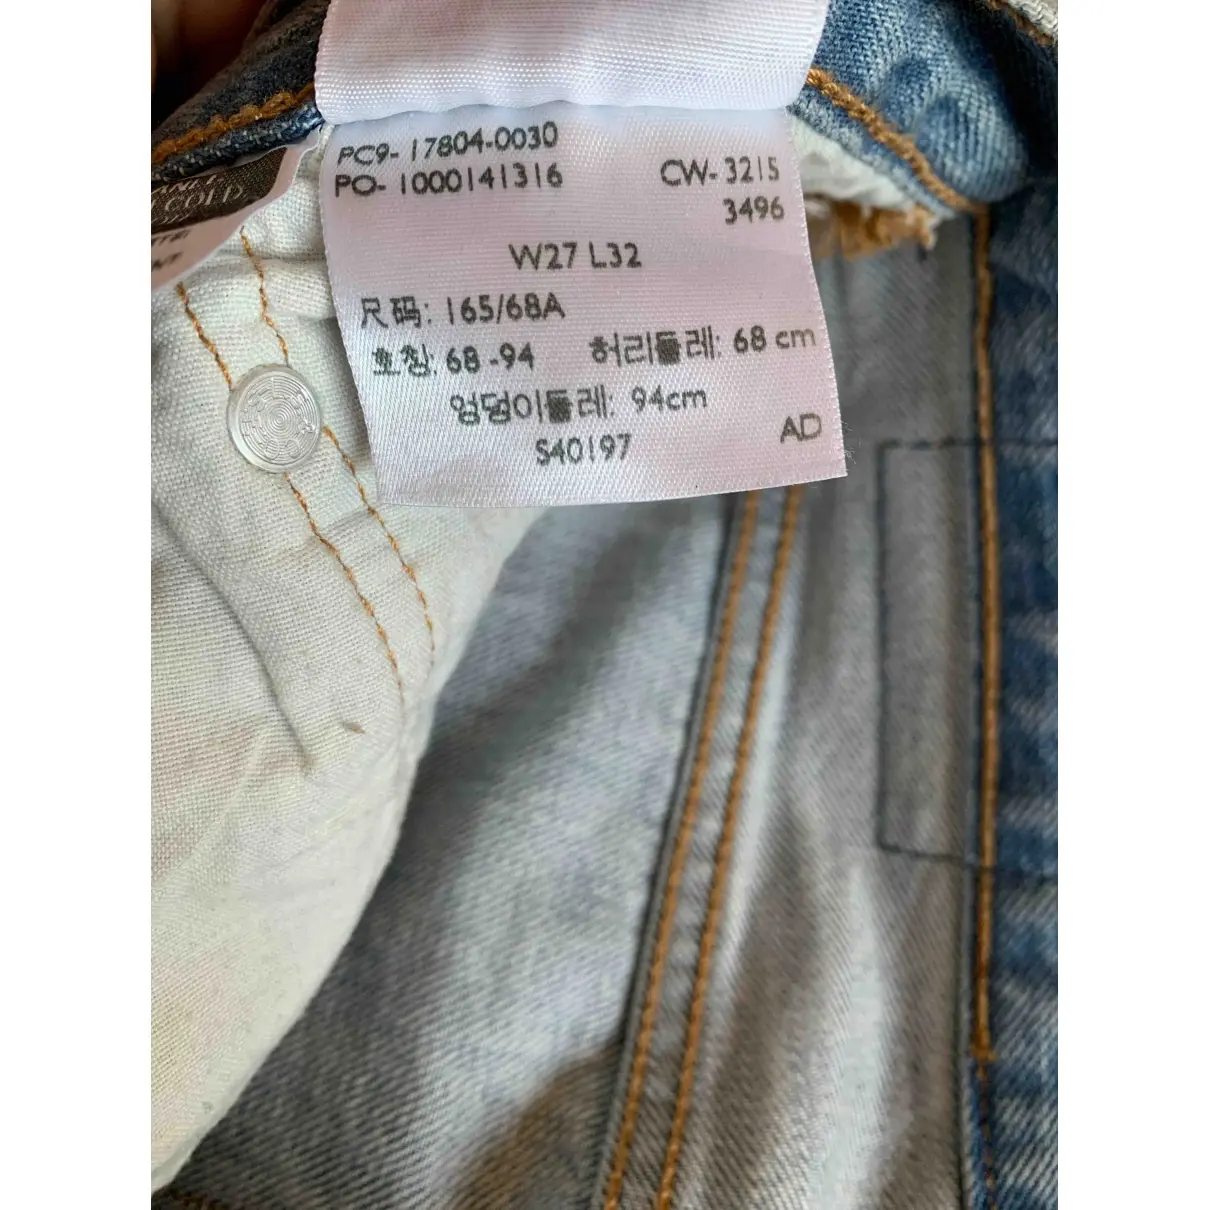 Buy Levi's Blue Cotton Jeans 501 online